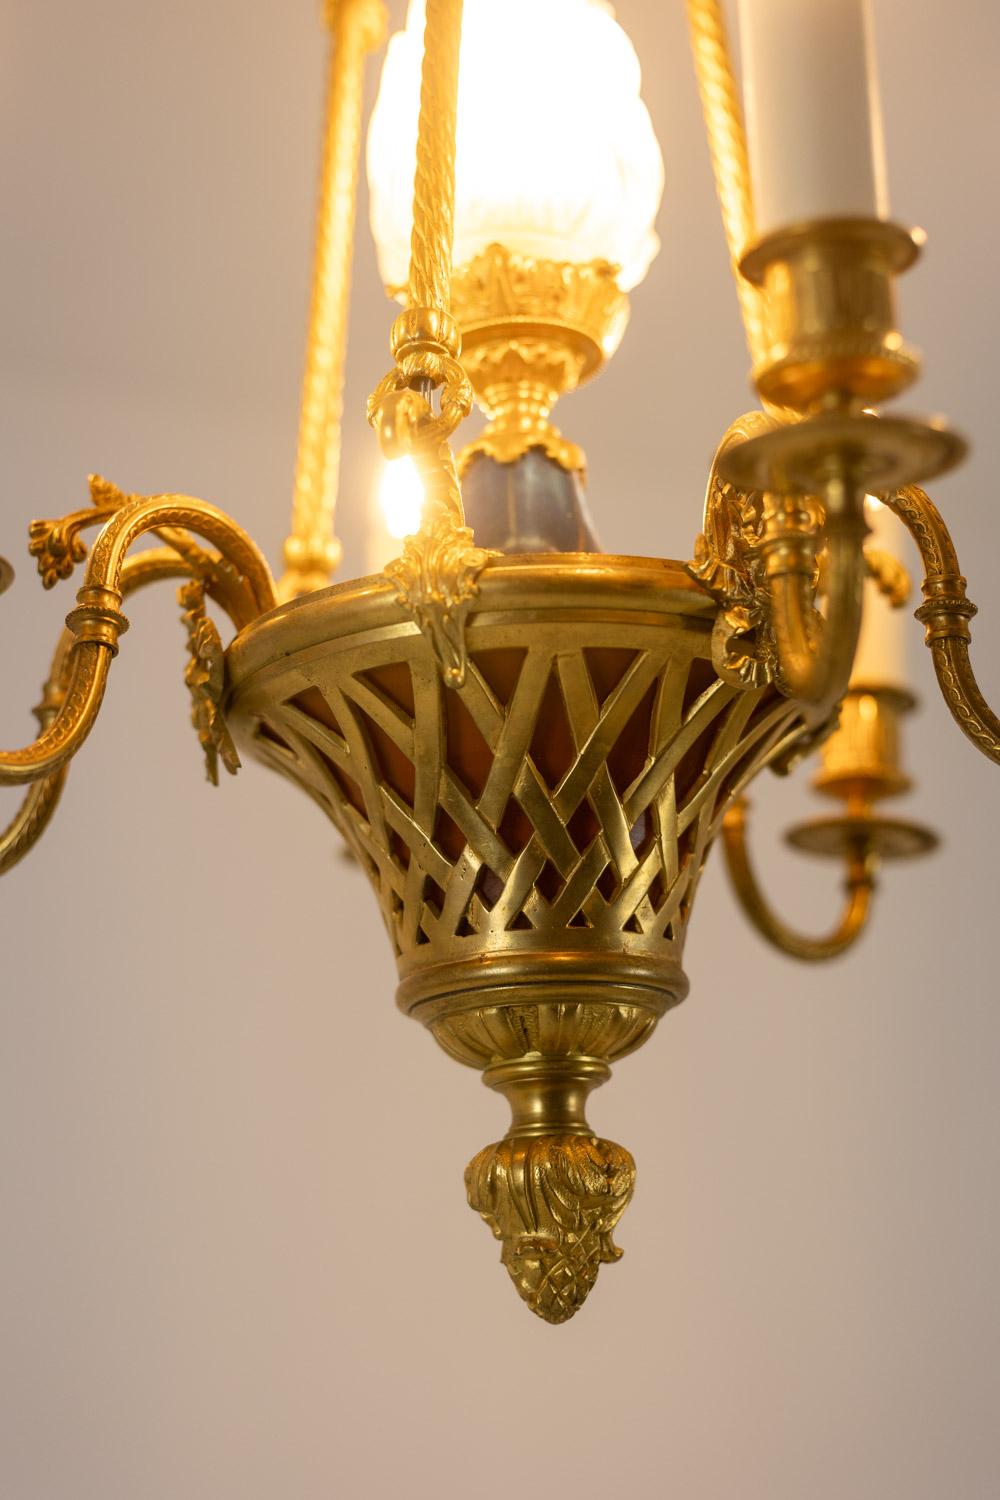 Lustre de style Louis XVI en bronze doré à six bras de lumière, groupés deux par deux par un ruban, avec leurs bobèches aux extrémités rugueuses se terminant par de fines frises régulières, qui reposent sur une coupe centrale en pâte de verre